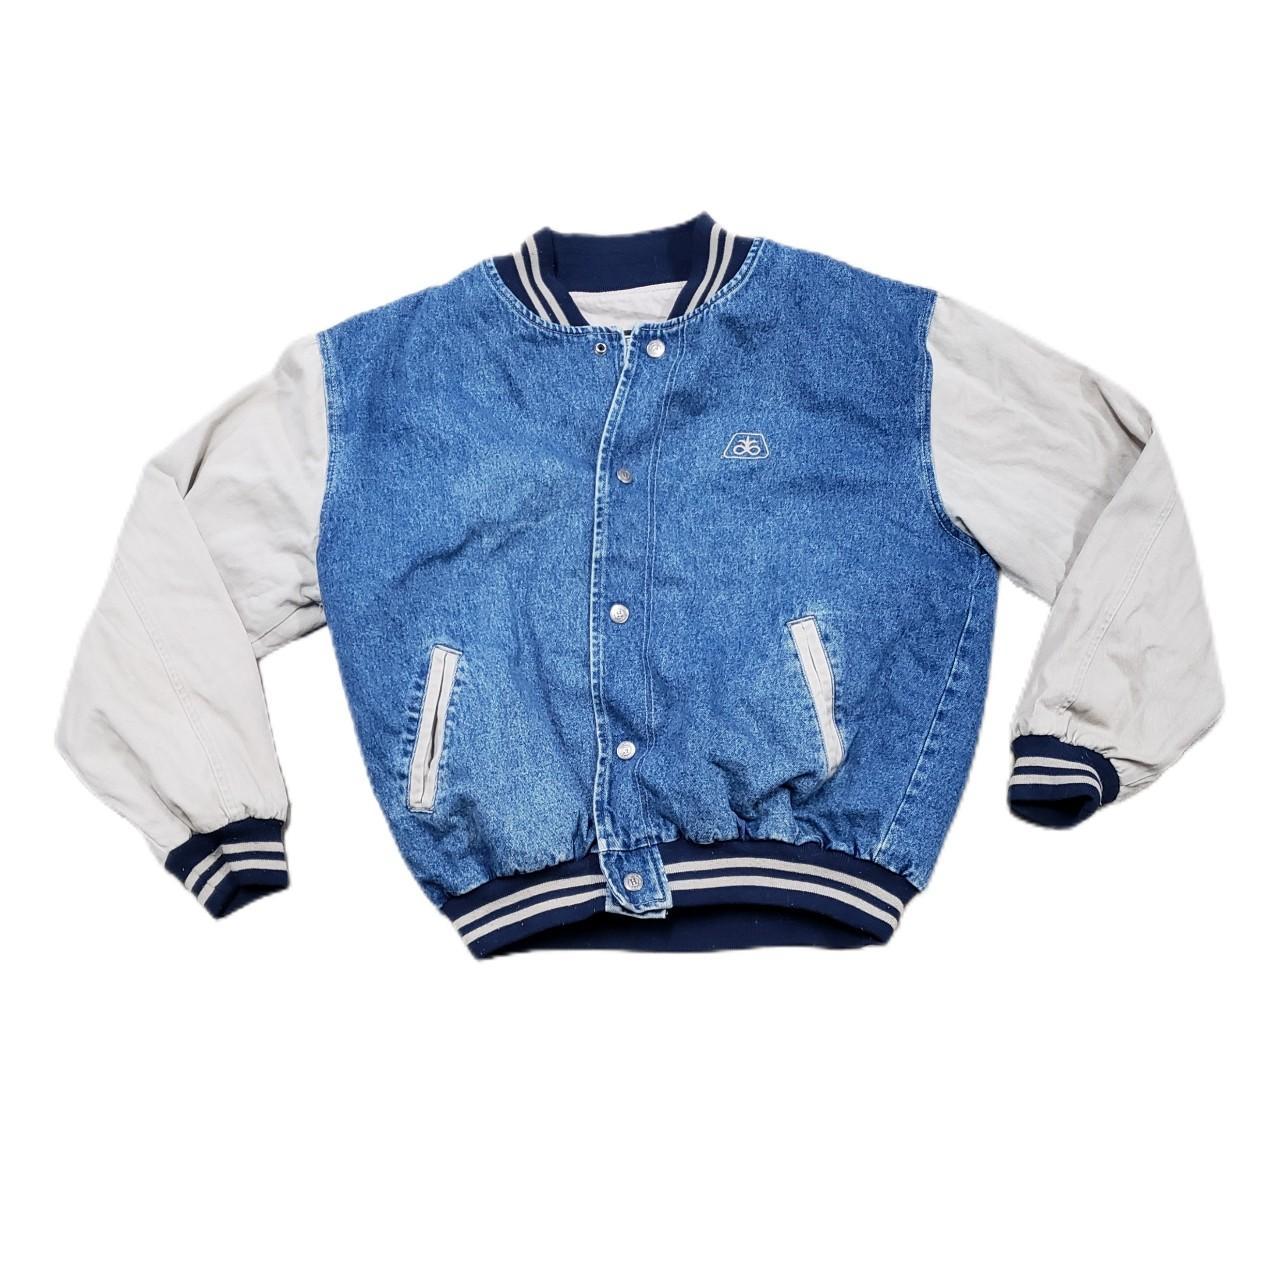 Men's Hartwell Jacket Size: Large Color: Blue/... - Depop